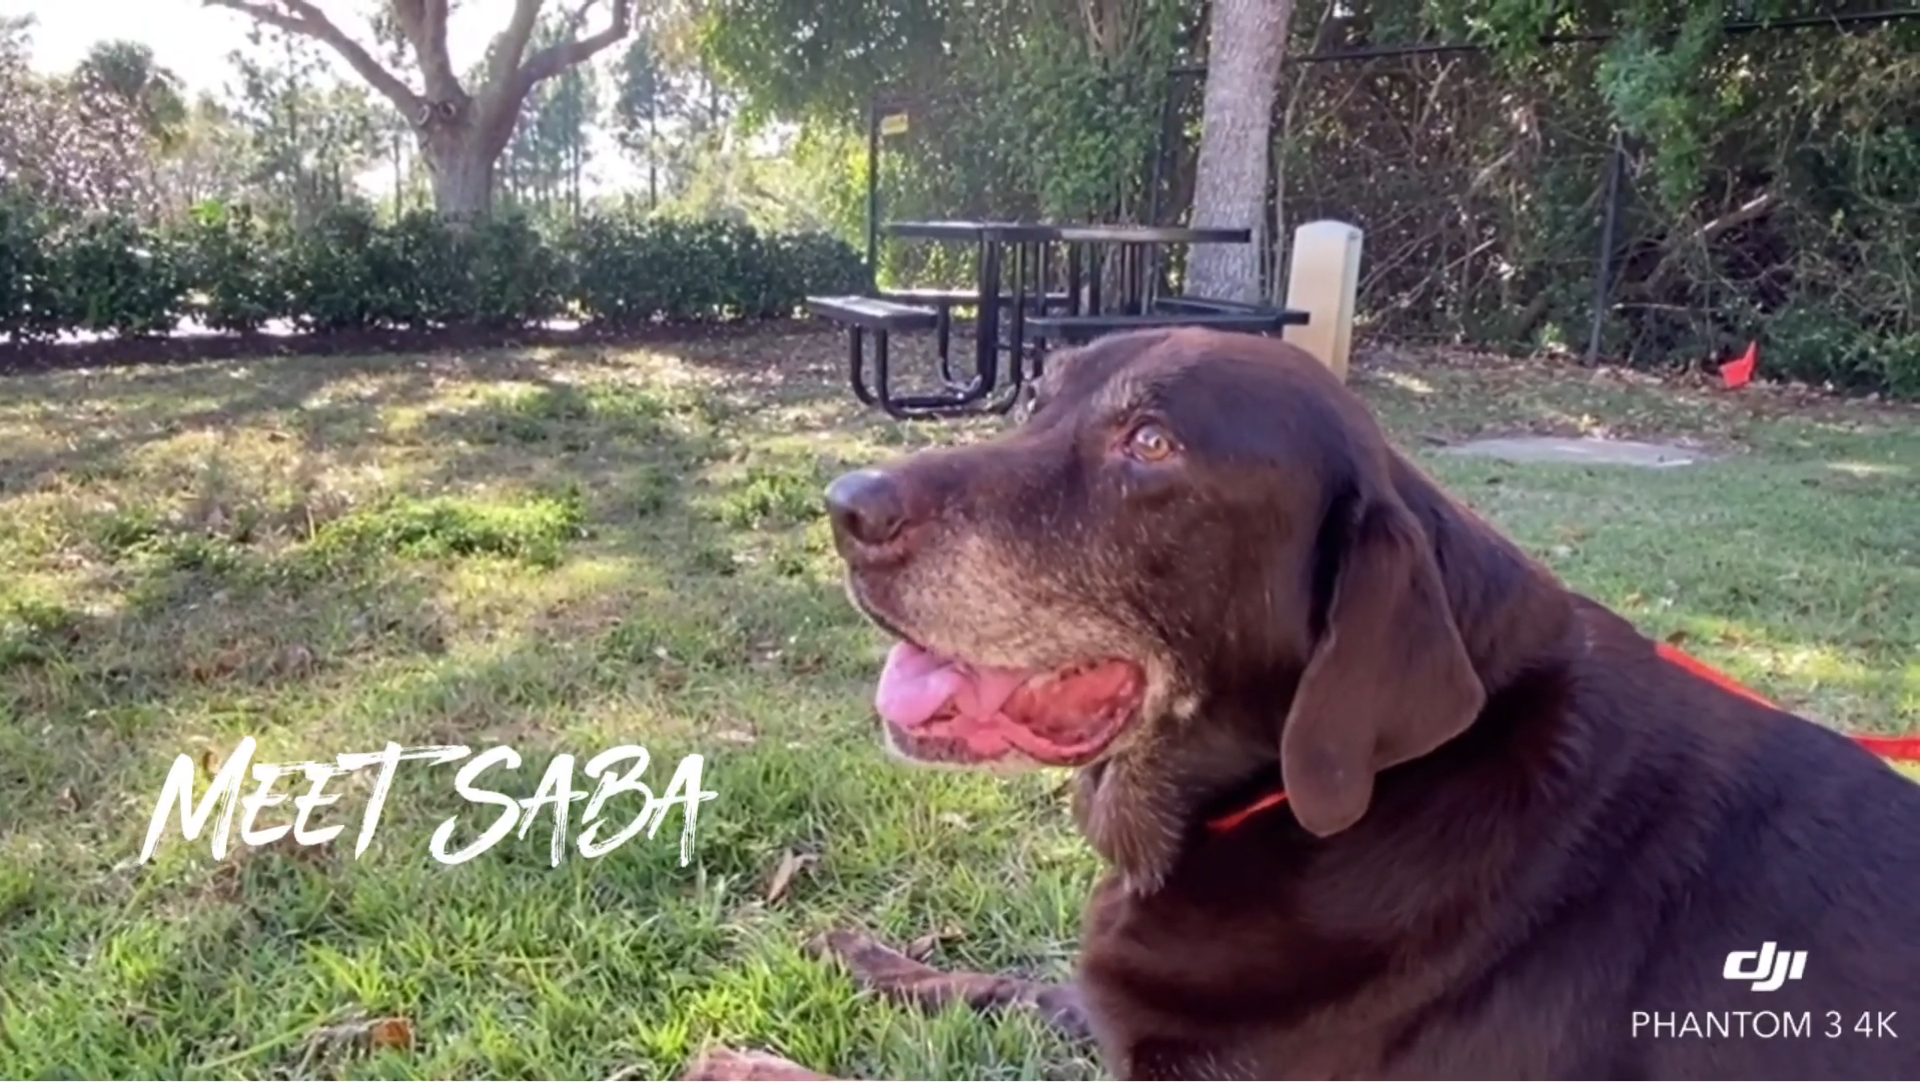 Meet Saba, A Labrador Retriever With The 18 Pound Mass